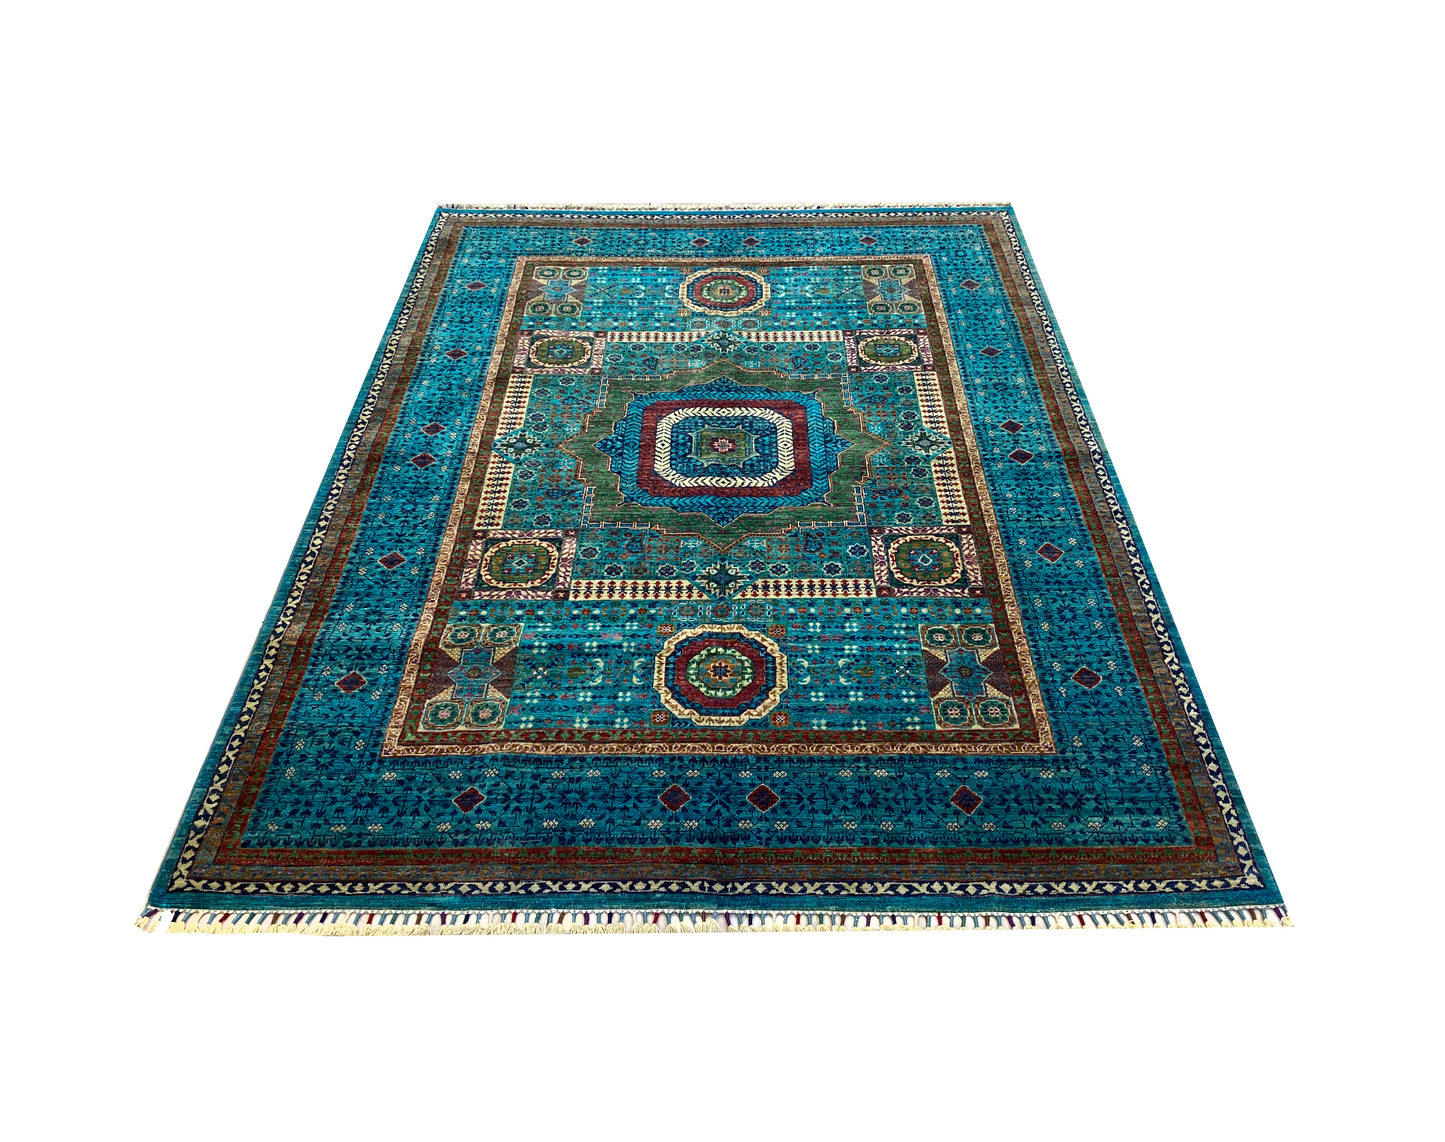 %100 Handmade Mamluk Carpet 241 x 181 cm